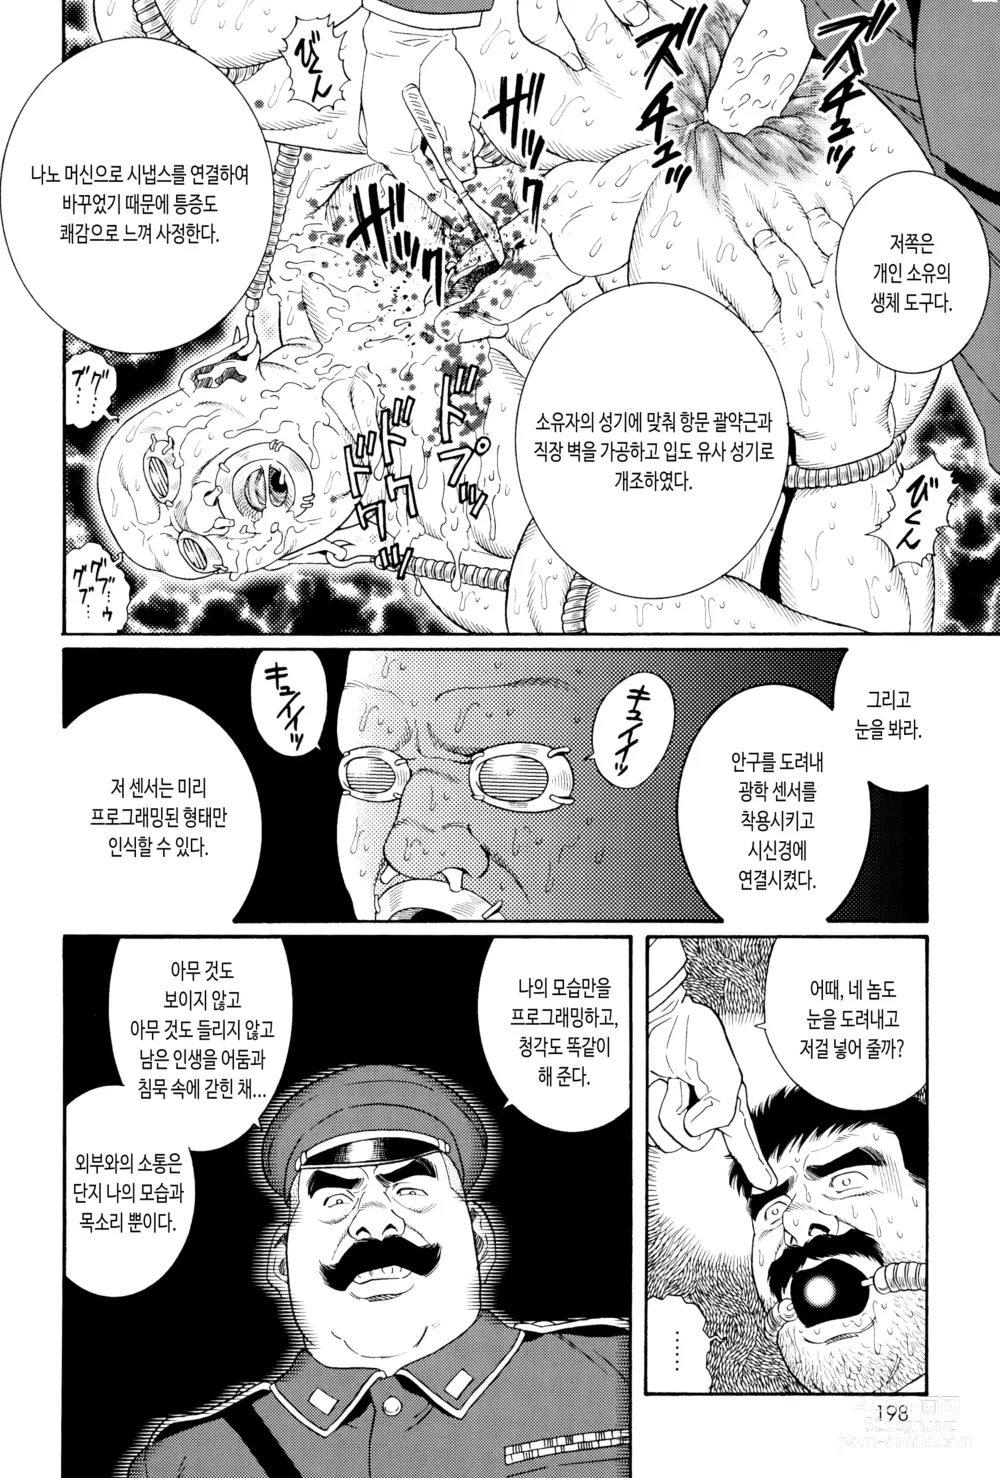 Page 12 of manga ZENITH